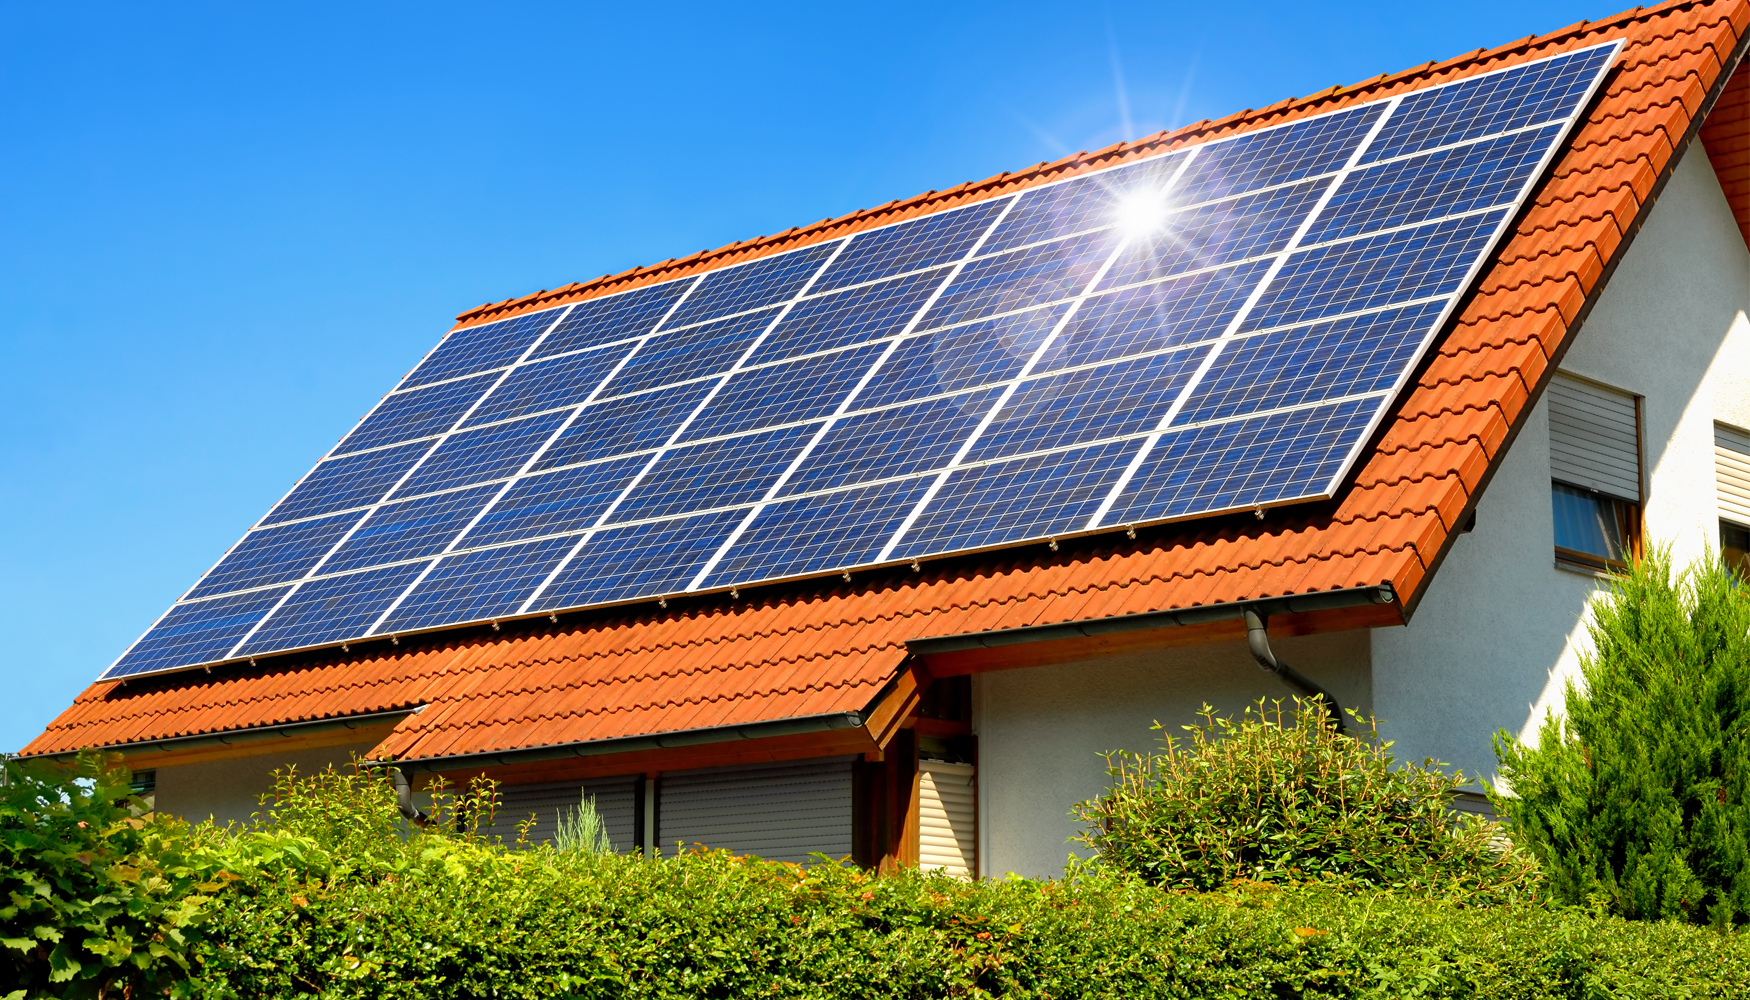 Foto de Estructuras para paneles solares sobre tejado: energía sostenible al alcance de todos